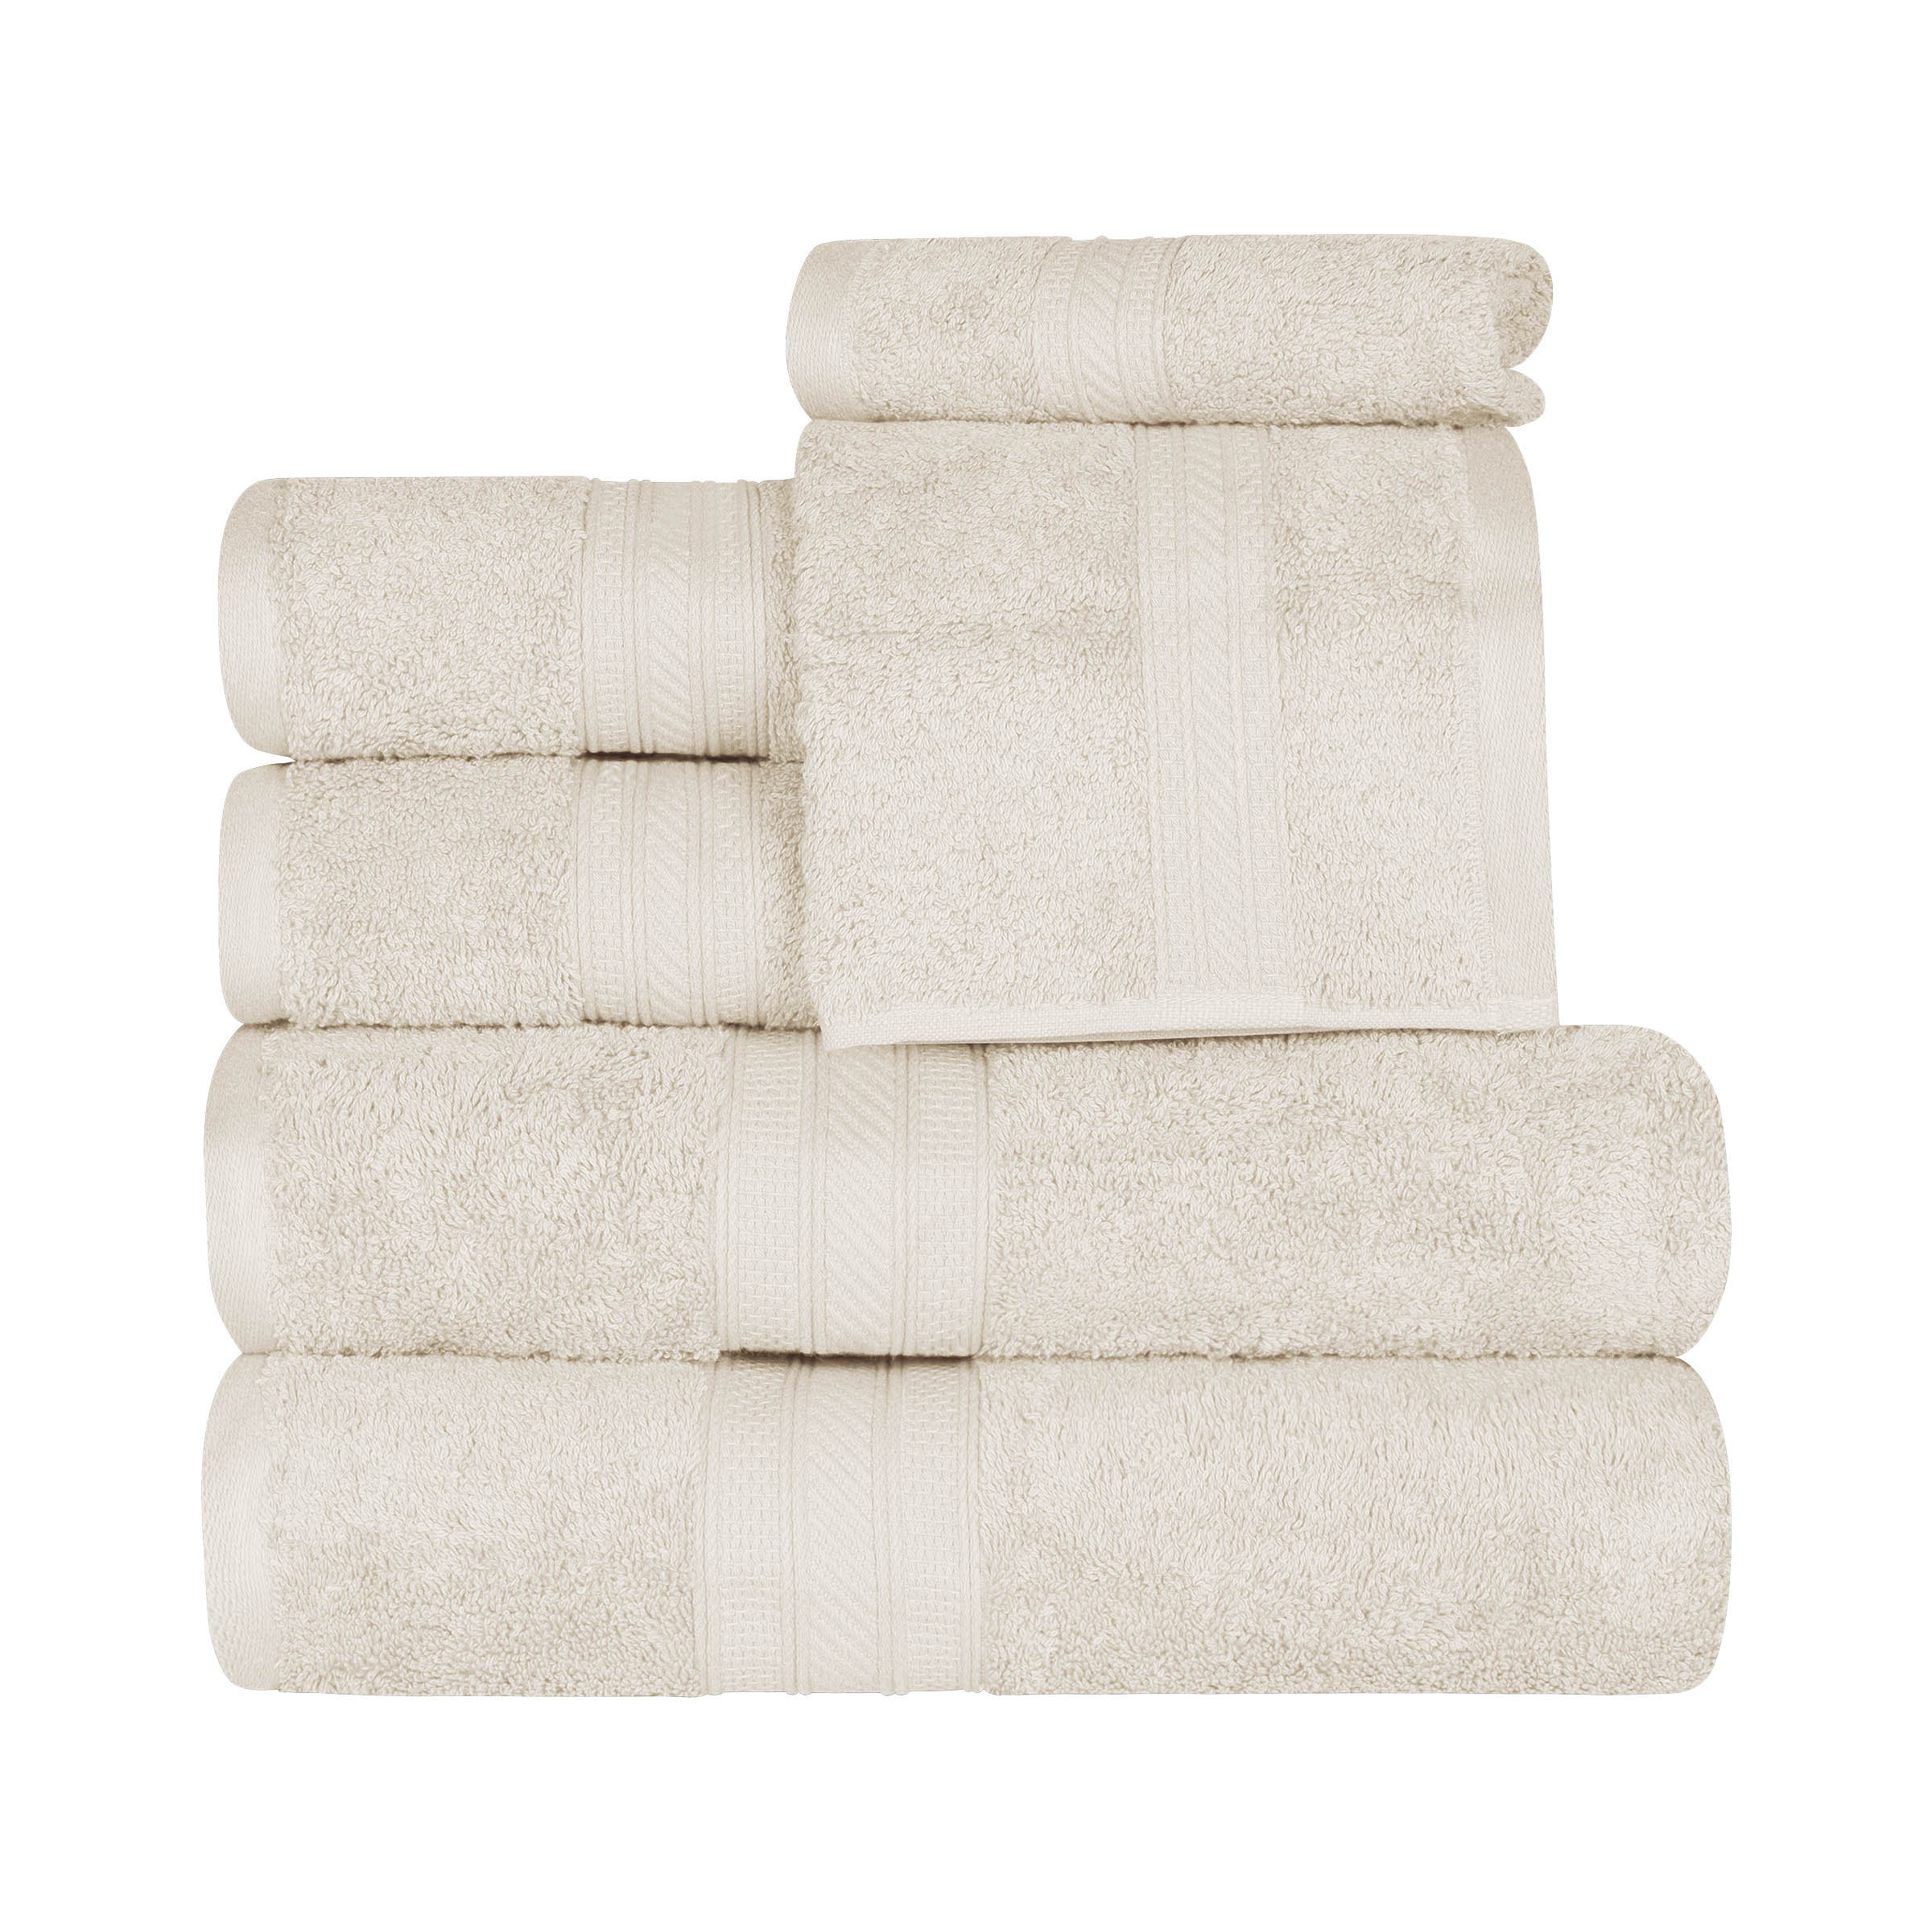 12 Piece 700GSM Towel Bale - 4 Face Cloths, 4 Hand Towels, 2 Bath